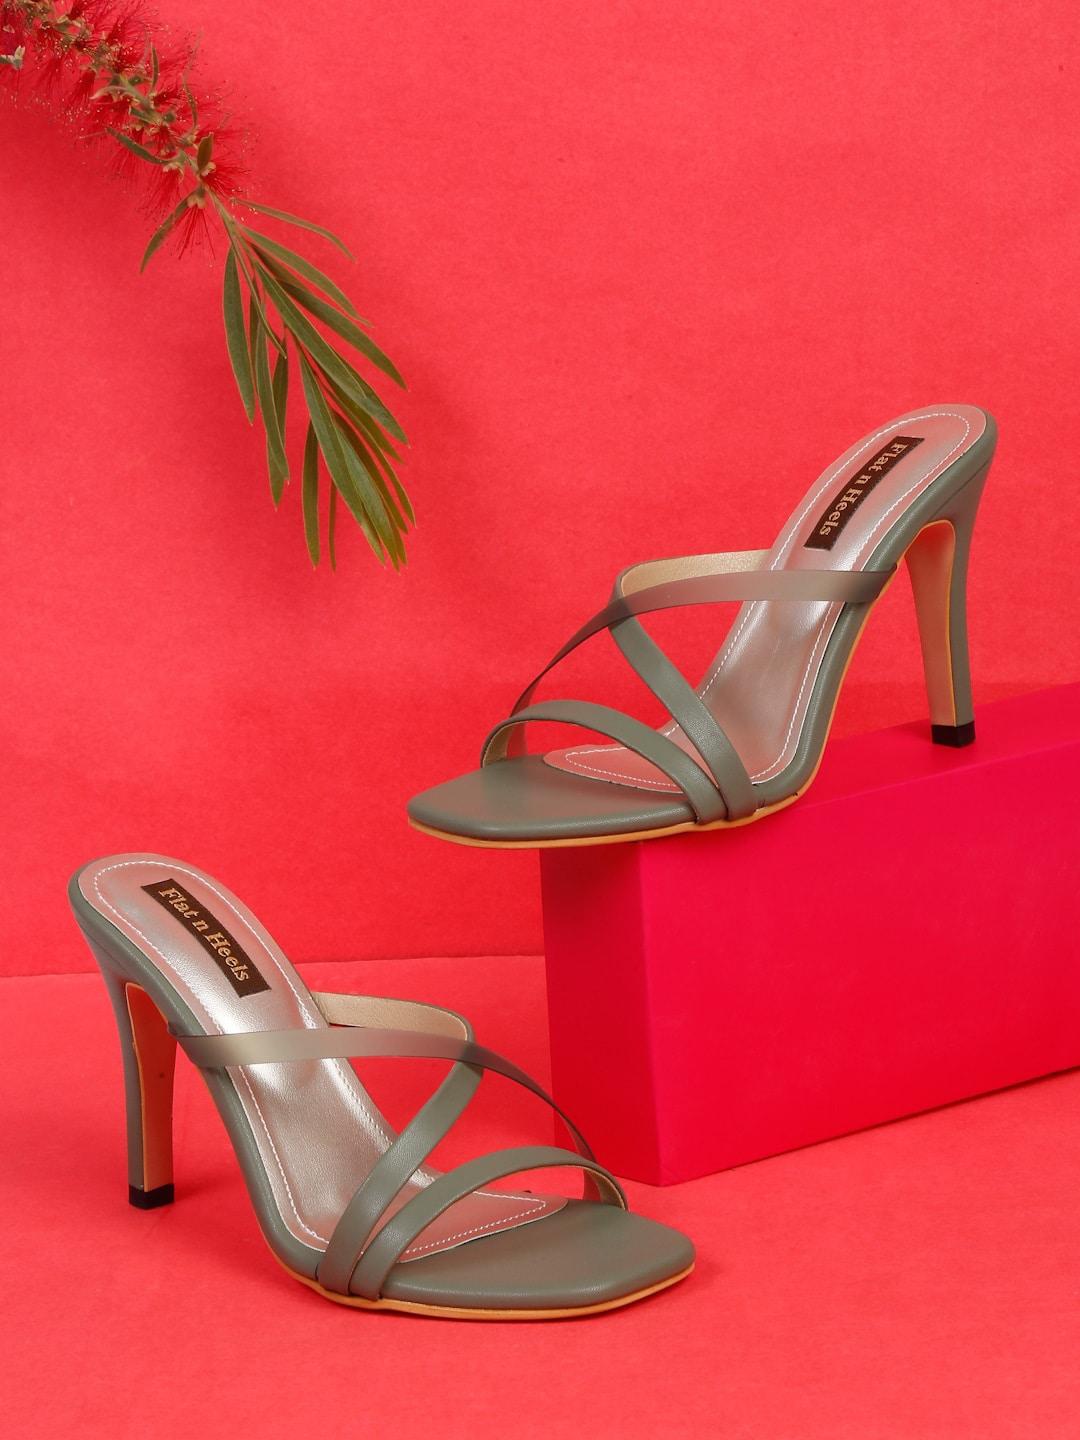 flat-n-heels-criss-cross-strap-stiletto-heels